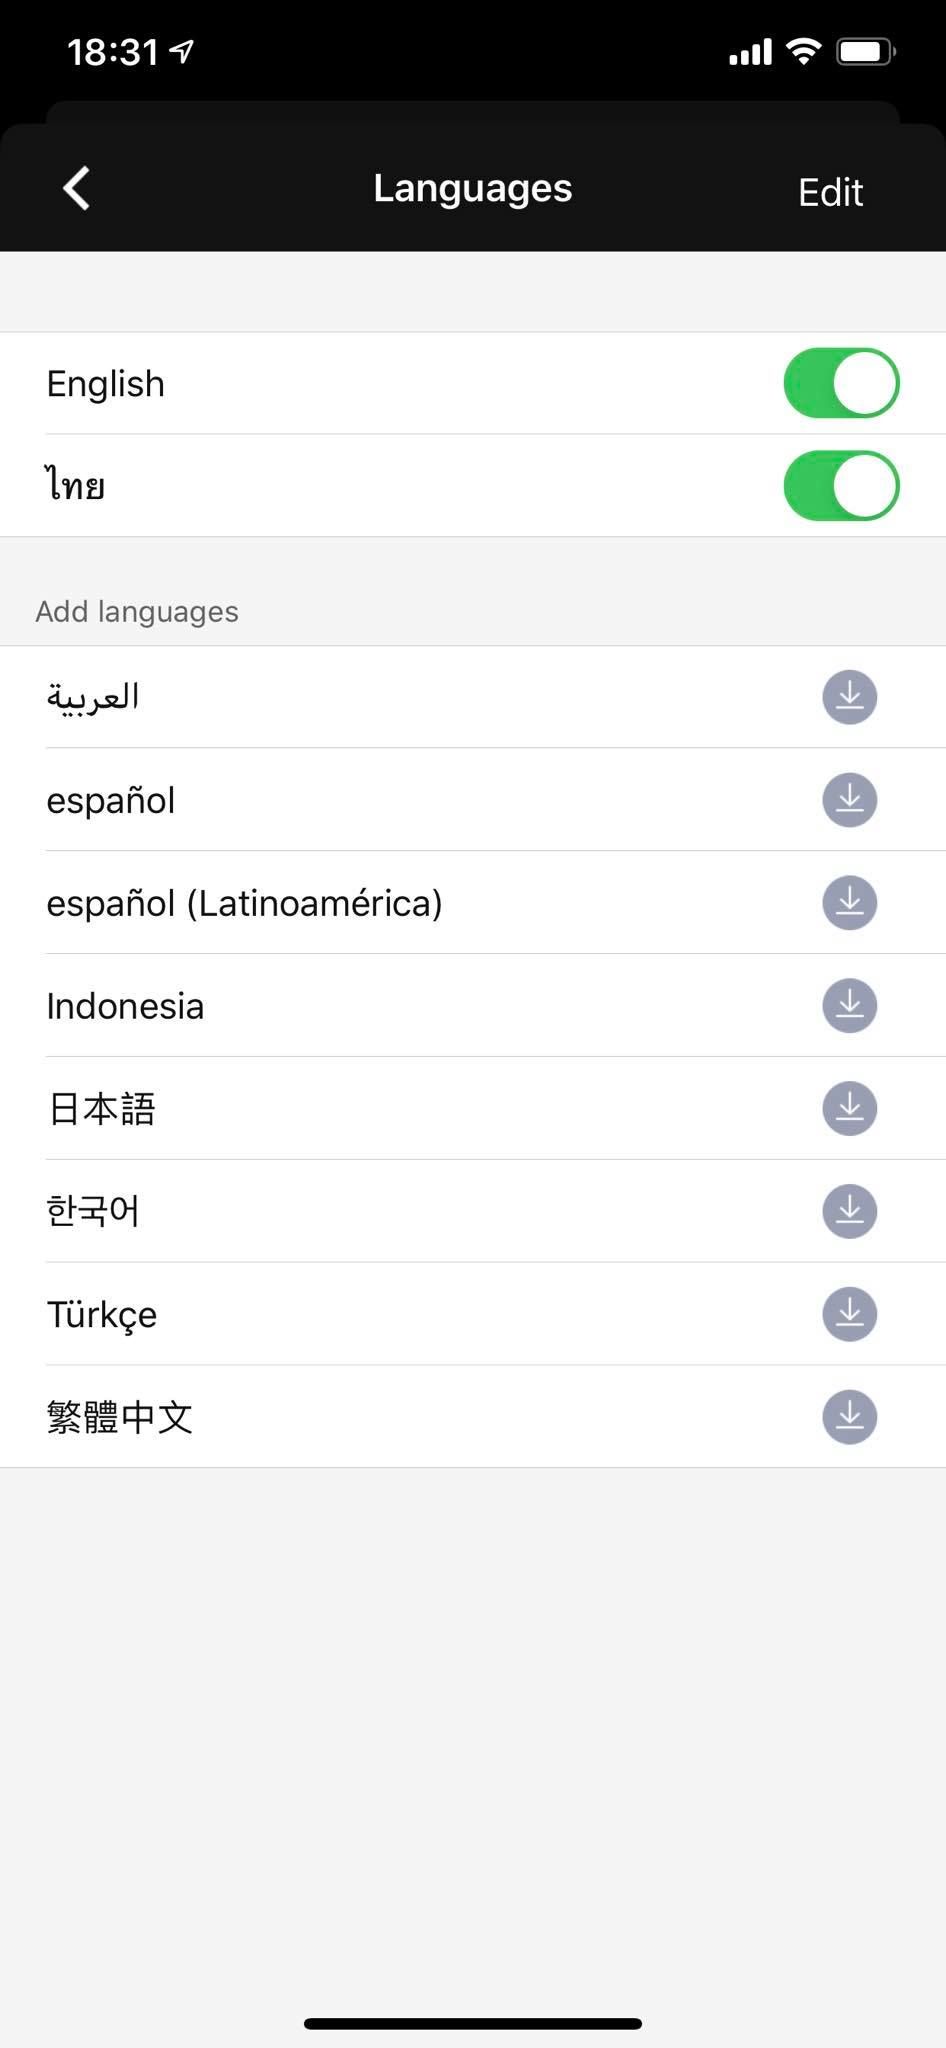 Tips | วิธีตั้งค่า โชว์ Sticker LINE ตามข้อความที่พิมพ์ ทั้งภาษาไทยและอังกฤษ บน Android, iOS และ PC